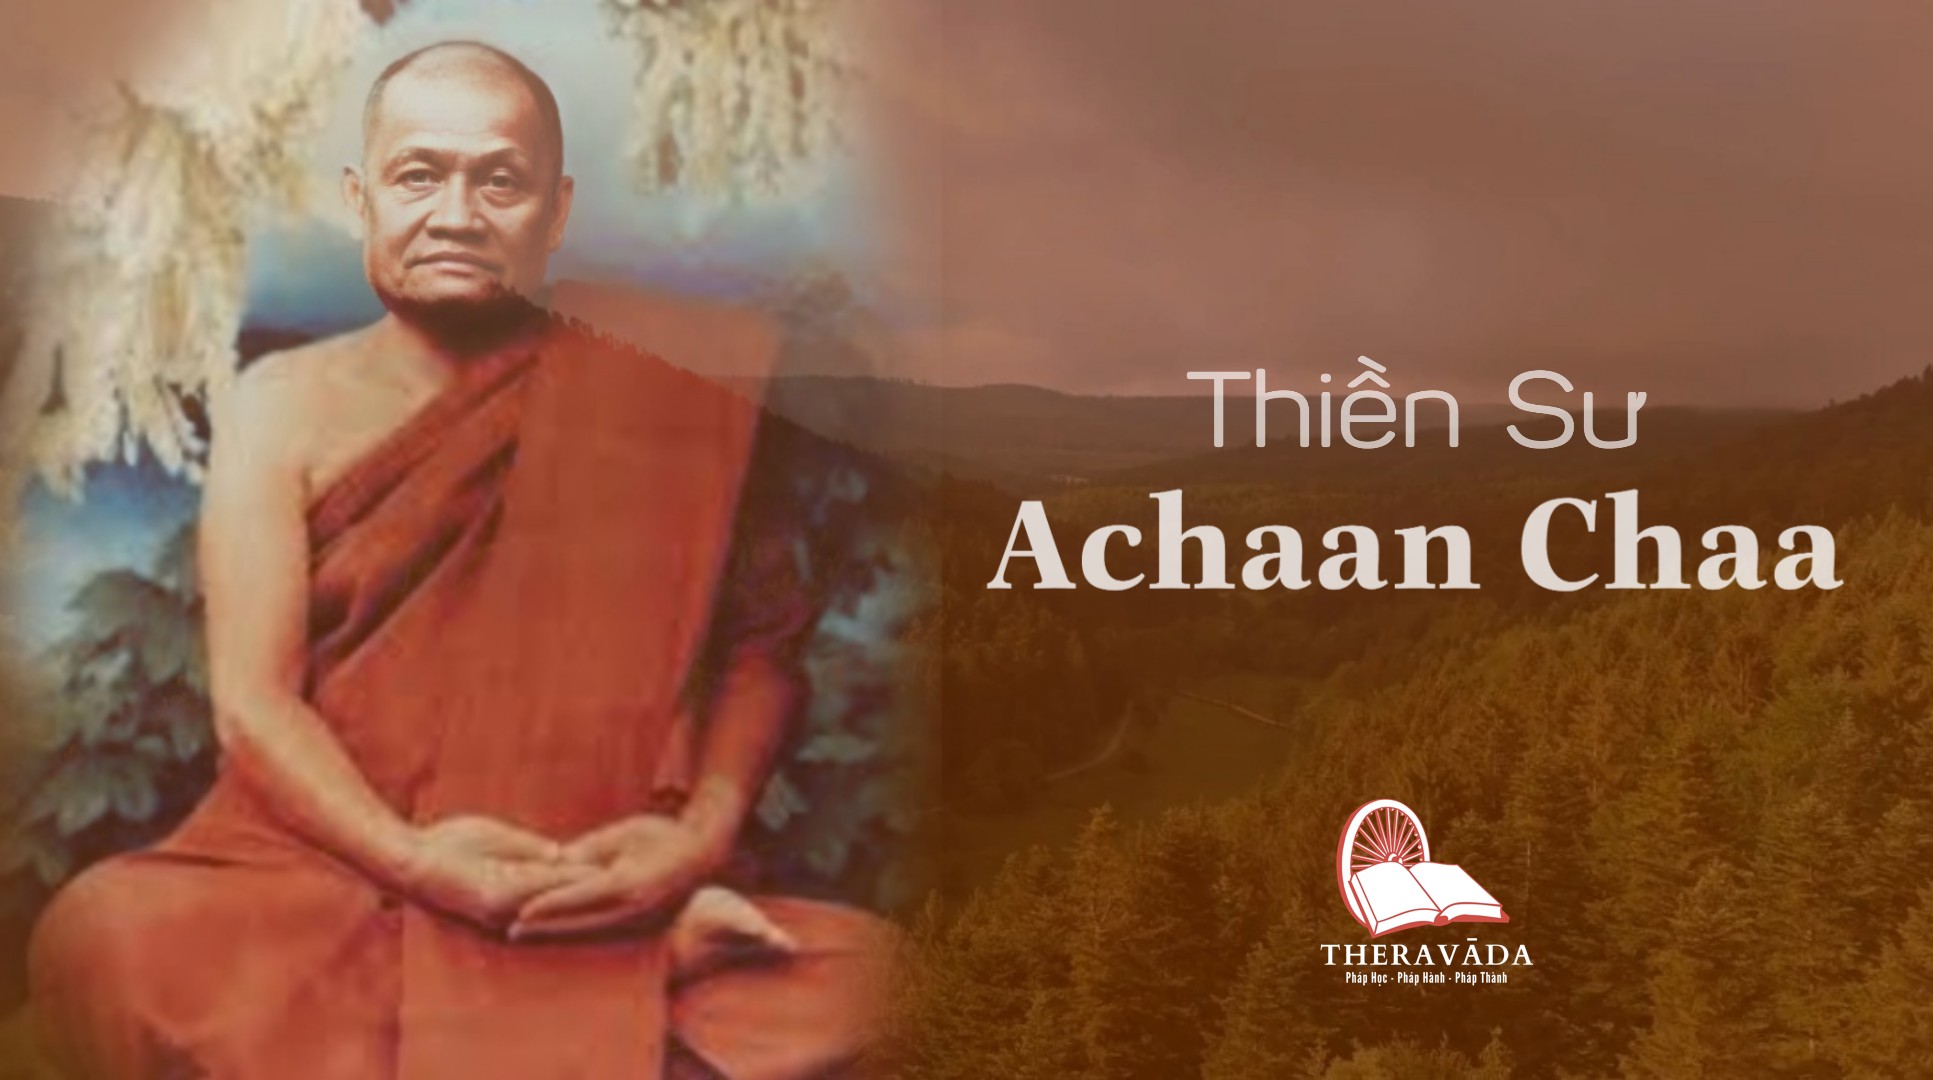 Thiền sư Ajahn Chah là ai? Tiểu sử cuộc đời và những thành tựu vĩ đại của ngài cho Phật giáo